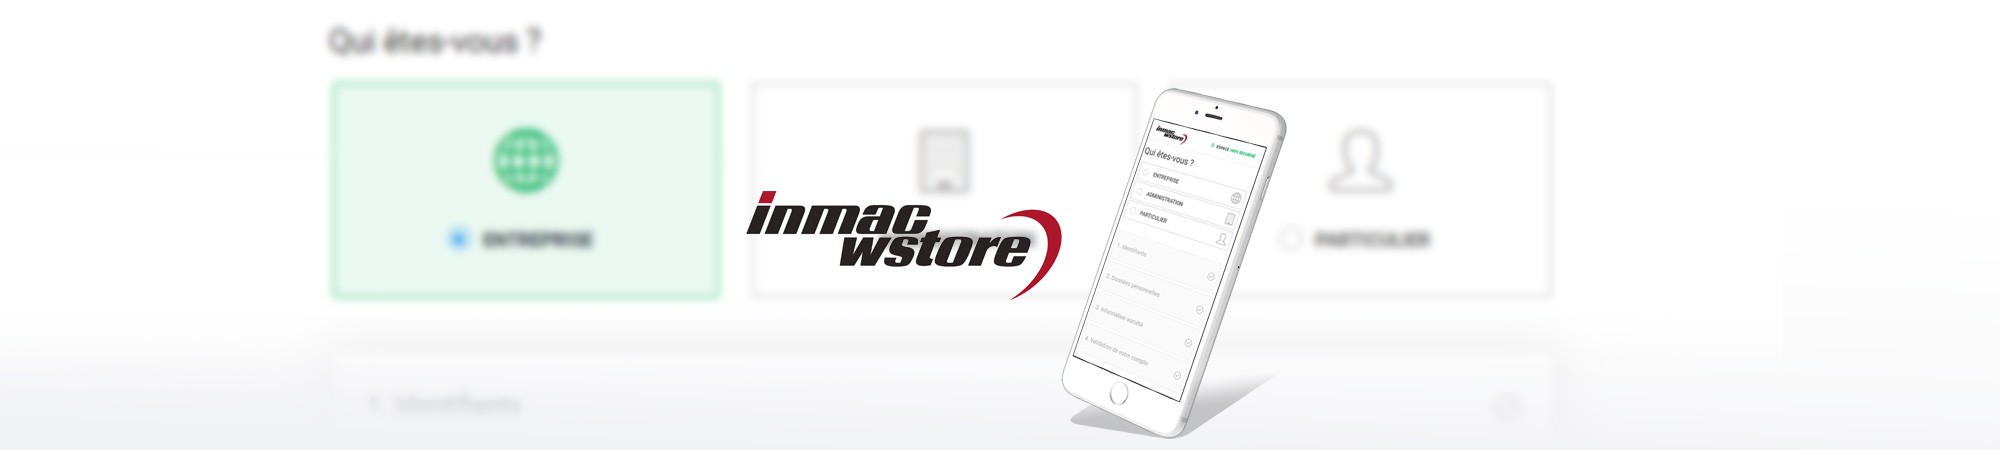  Refonte responsive de la page de création de compte du site Inmac Wstore